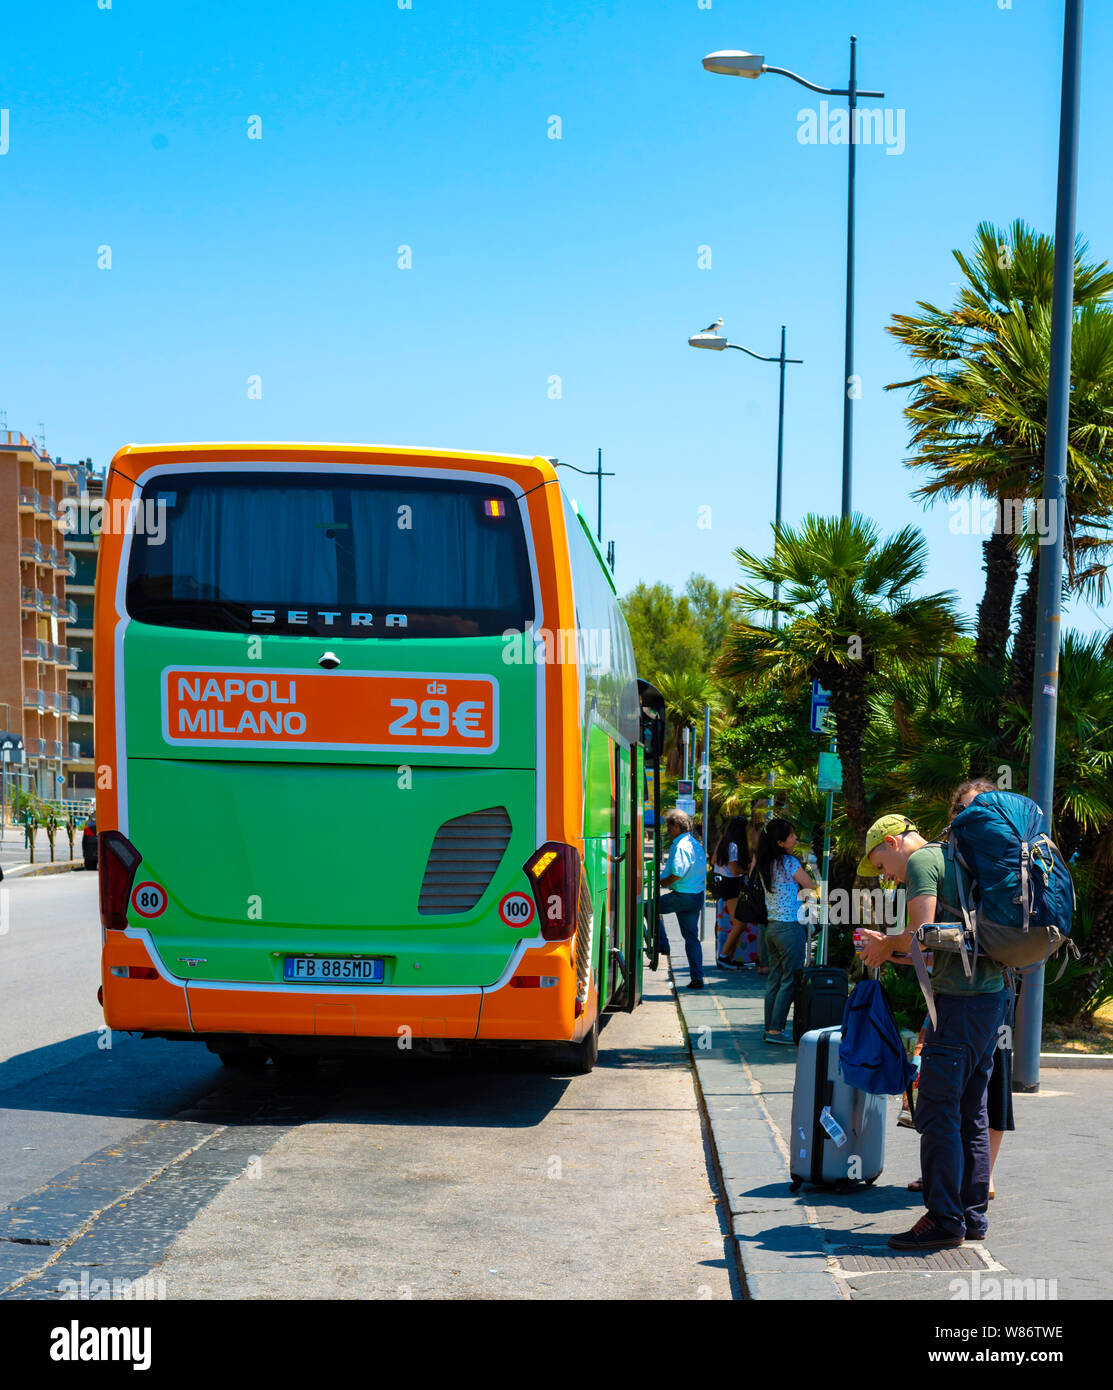 Salerno, Italia - 15 de julio de 2018: los turistas y los autobuses para llegar a los centros turísticos de la costa de Sorrento. Salerno - Italia Foto de stock